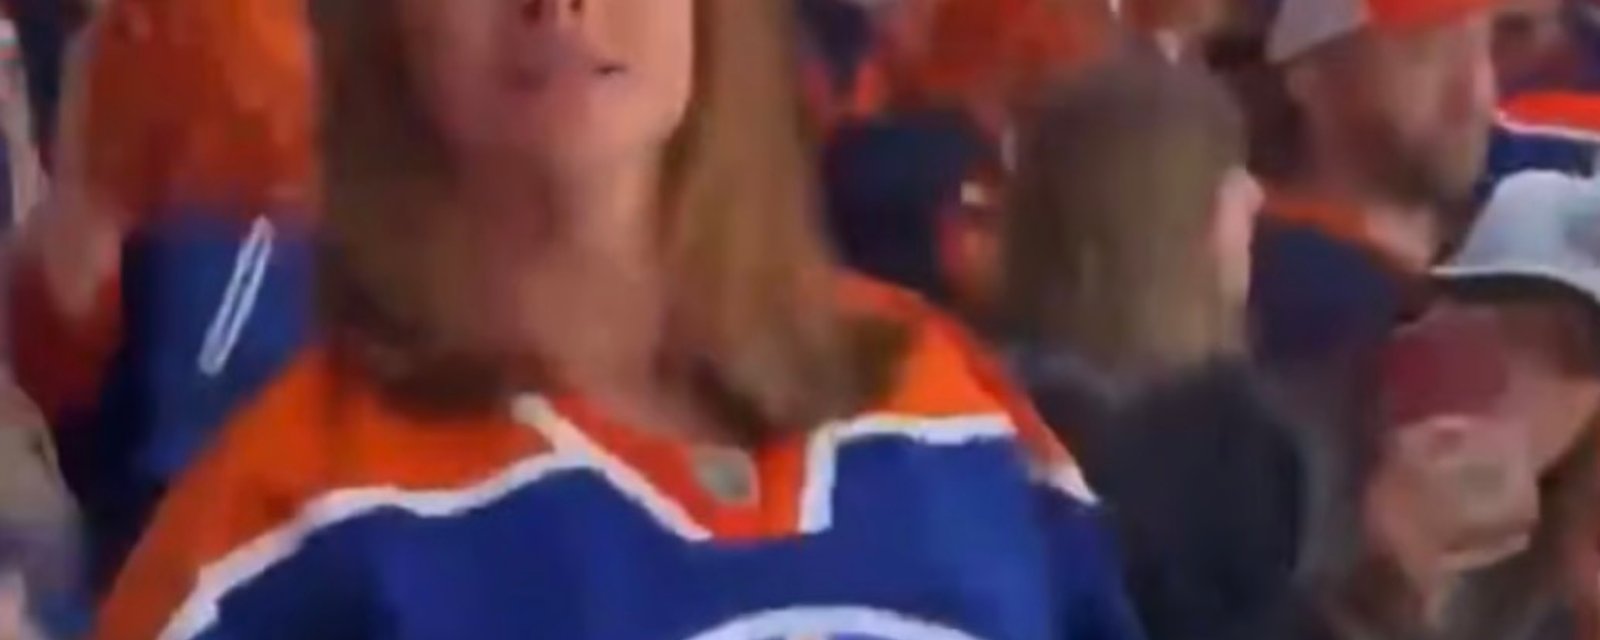 Une fan des Oilers « flash » son haut en plein match et soulève une tonne de commentaires